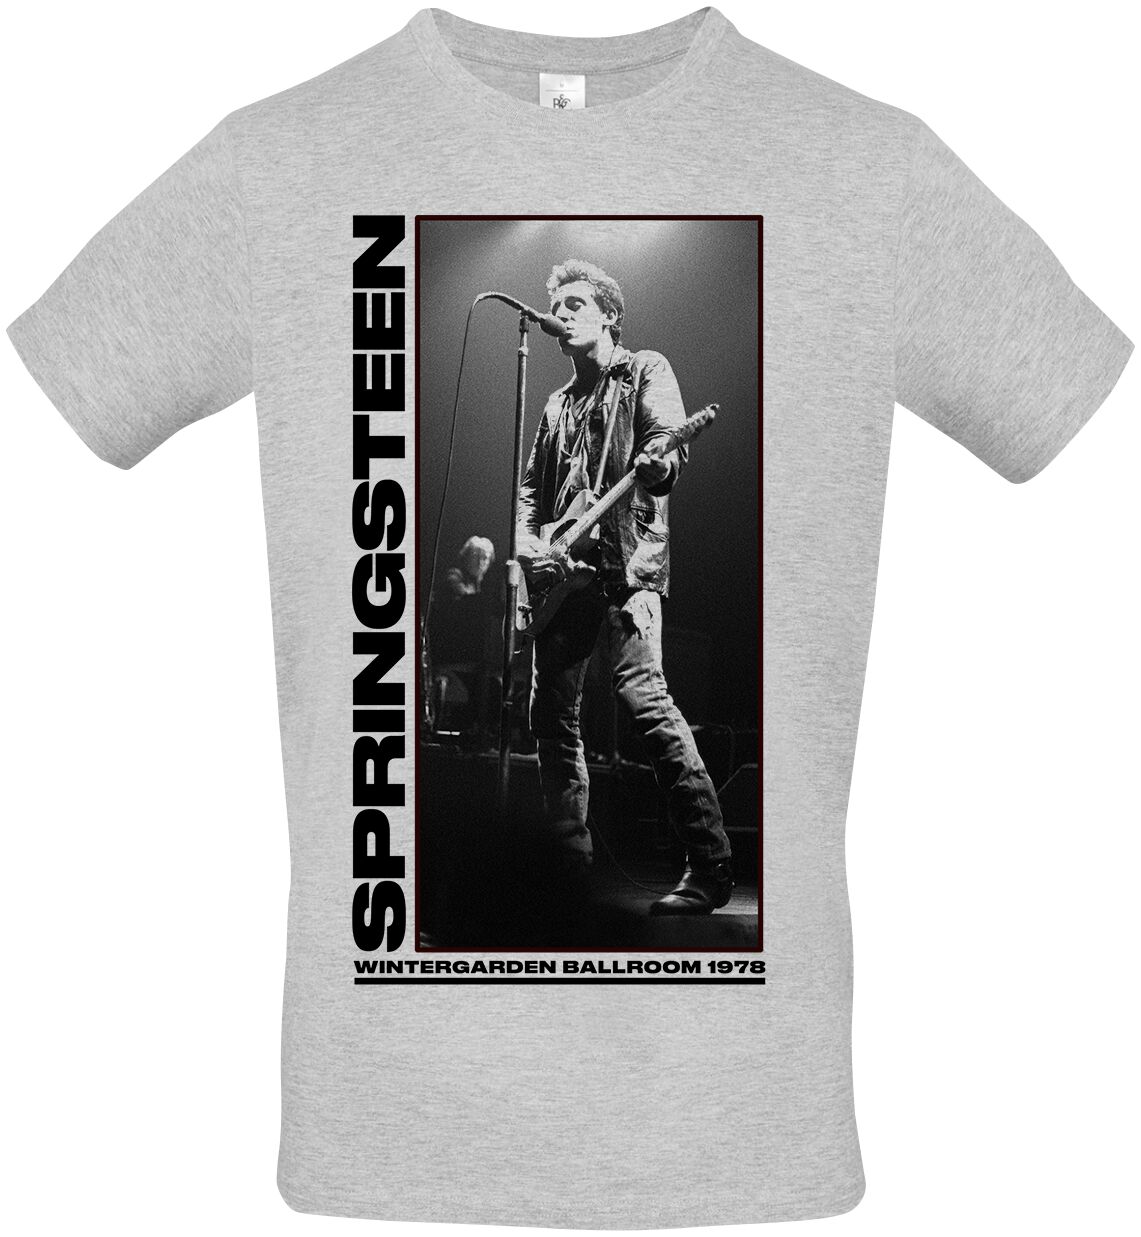 Bruce Springsteen T-Shirt - Wintergarden Photo - S bis XXL - für Männer - Größe XXL - grau meliert  - Lizenziertes Merchandise!